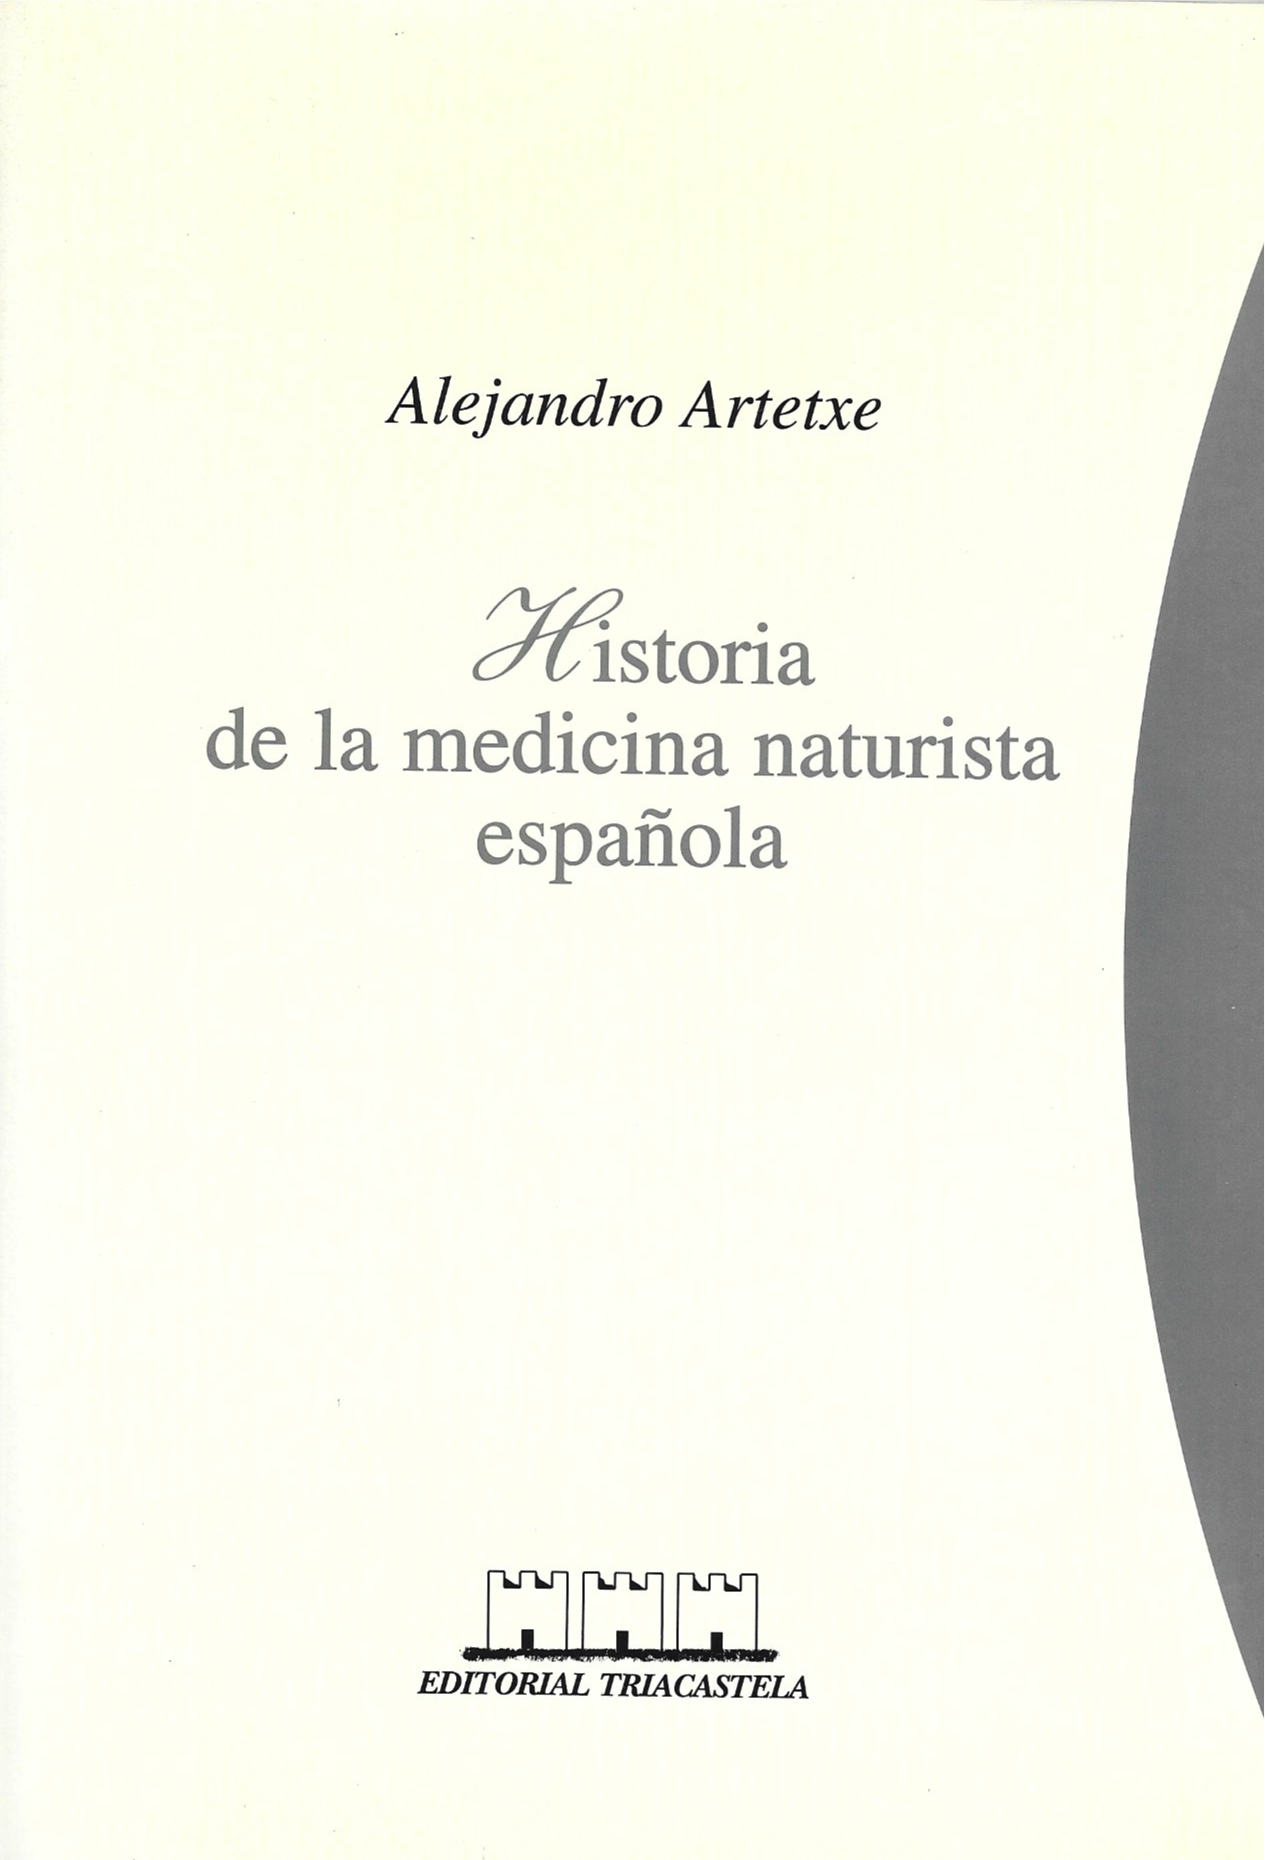 Libro de Alejandro Arteche, Historia de la medicina naturista española.Arteche